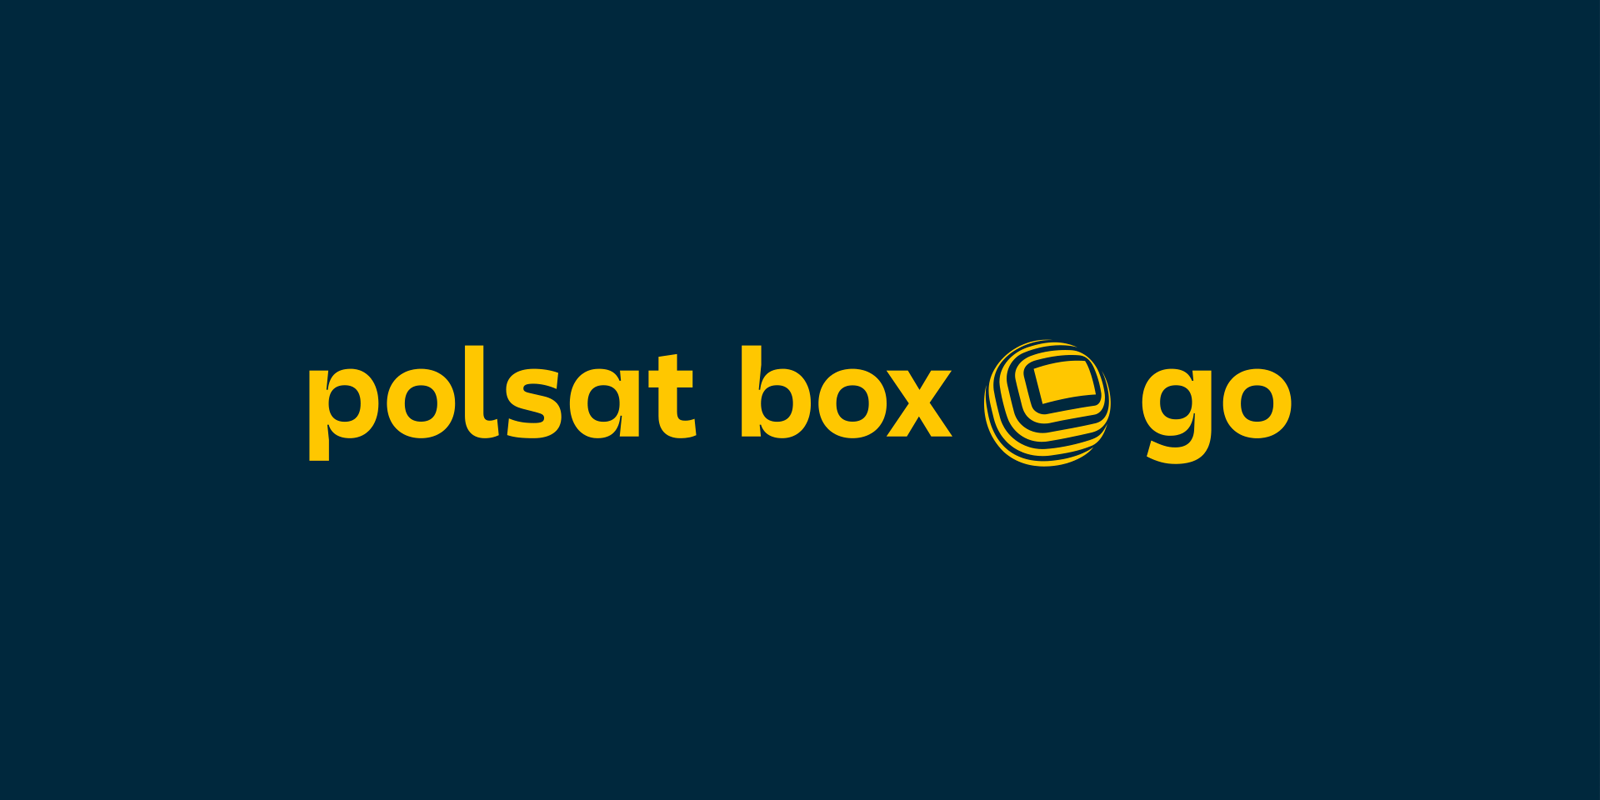 Polsat zamyka jeden z serwisów streamingowych Polsat Go MEDIARUN COM POLSAT BOX GO